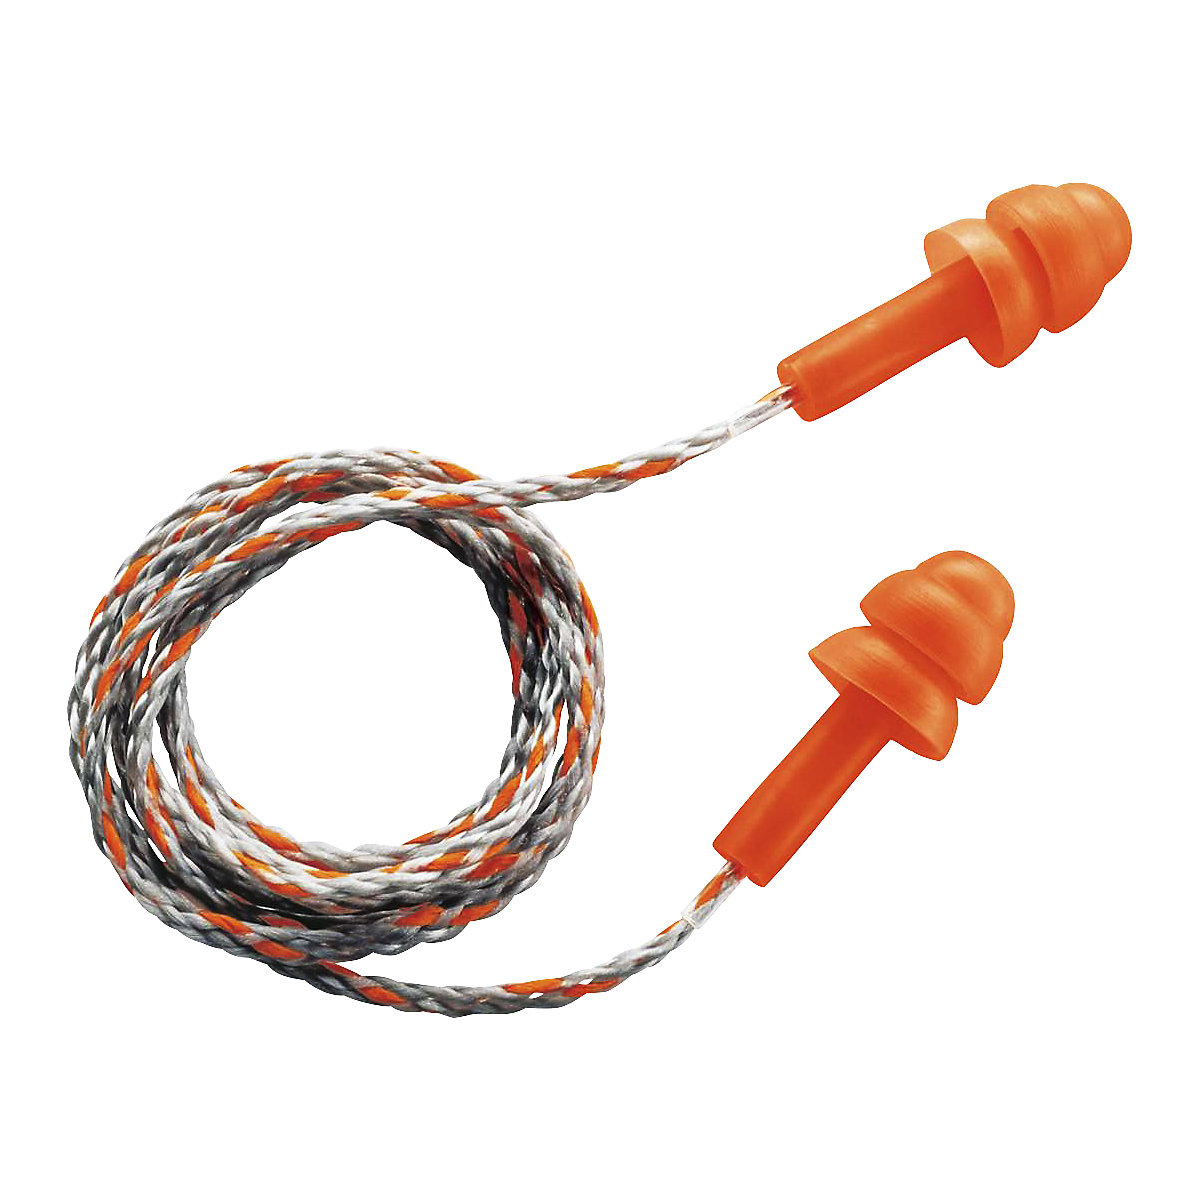 WHISPER 2111201 earplug with cord in mini box - Uvex